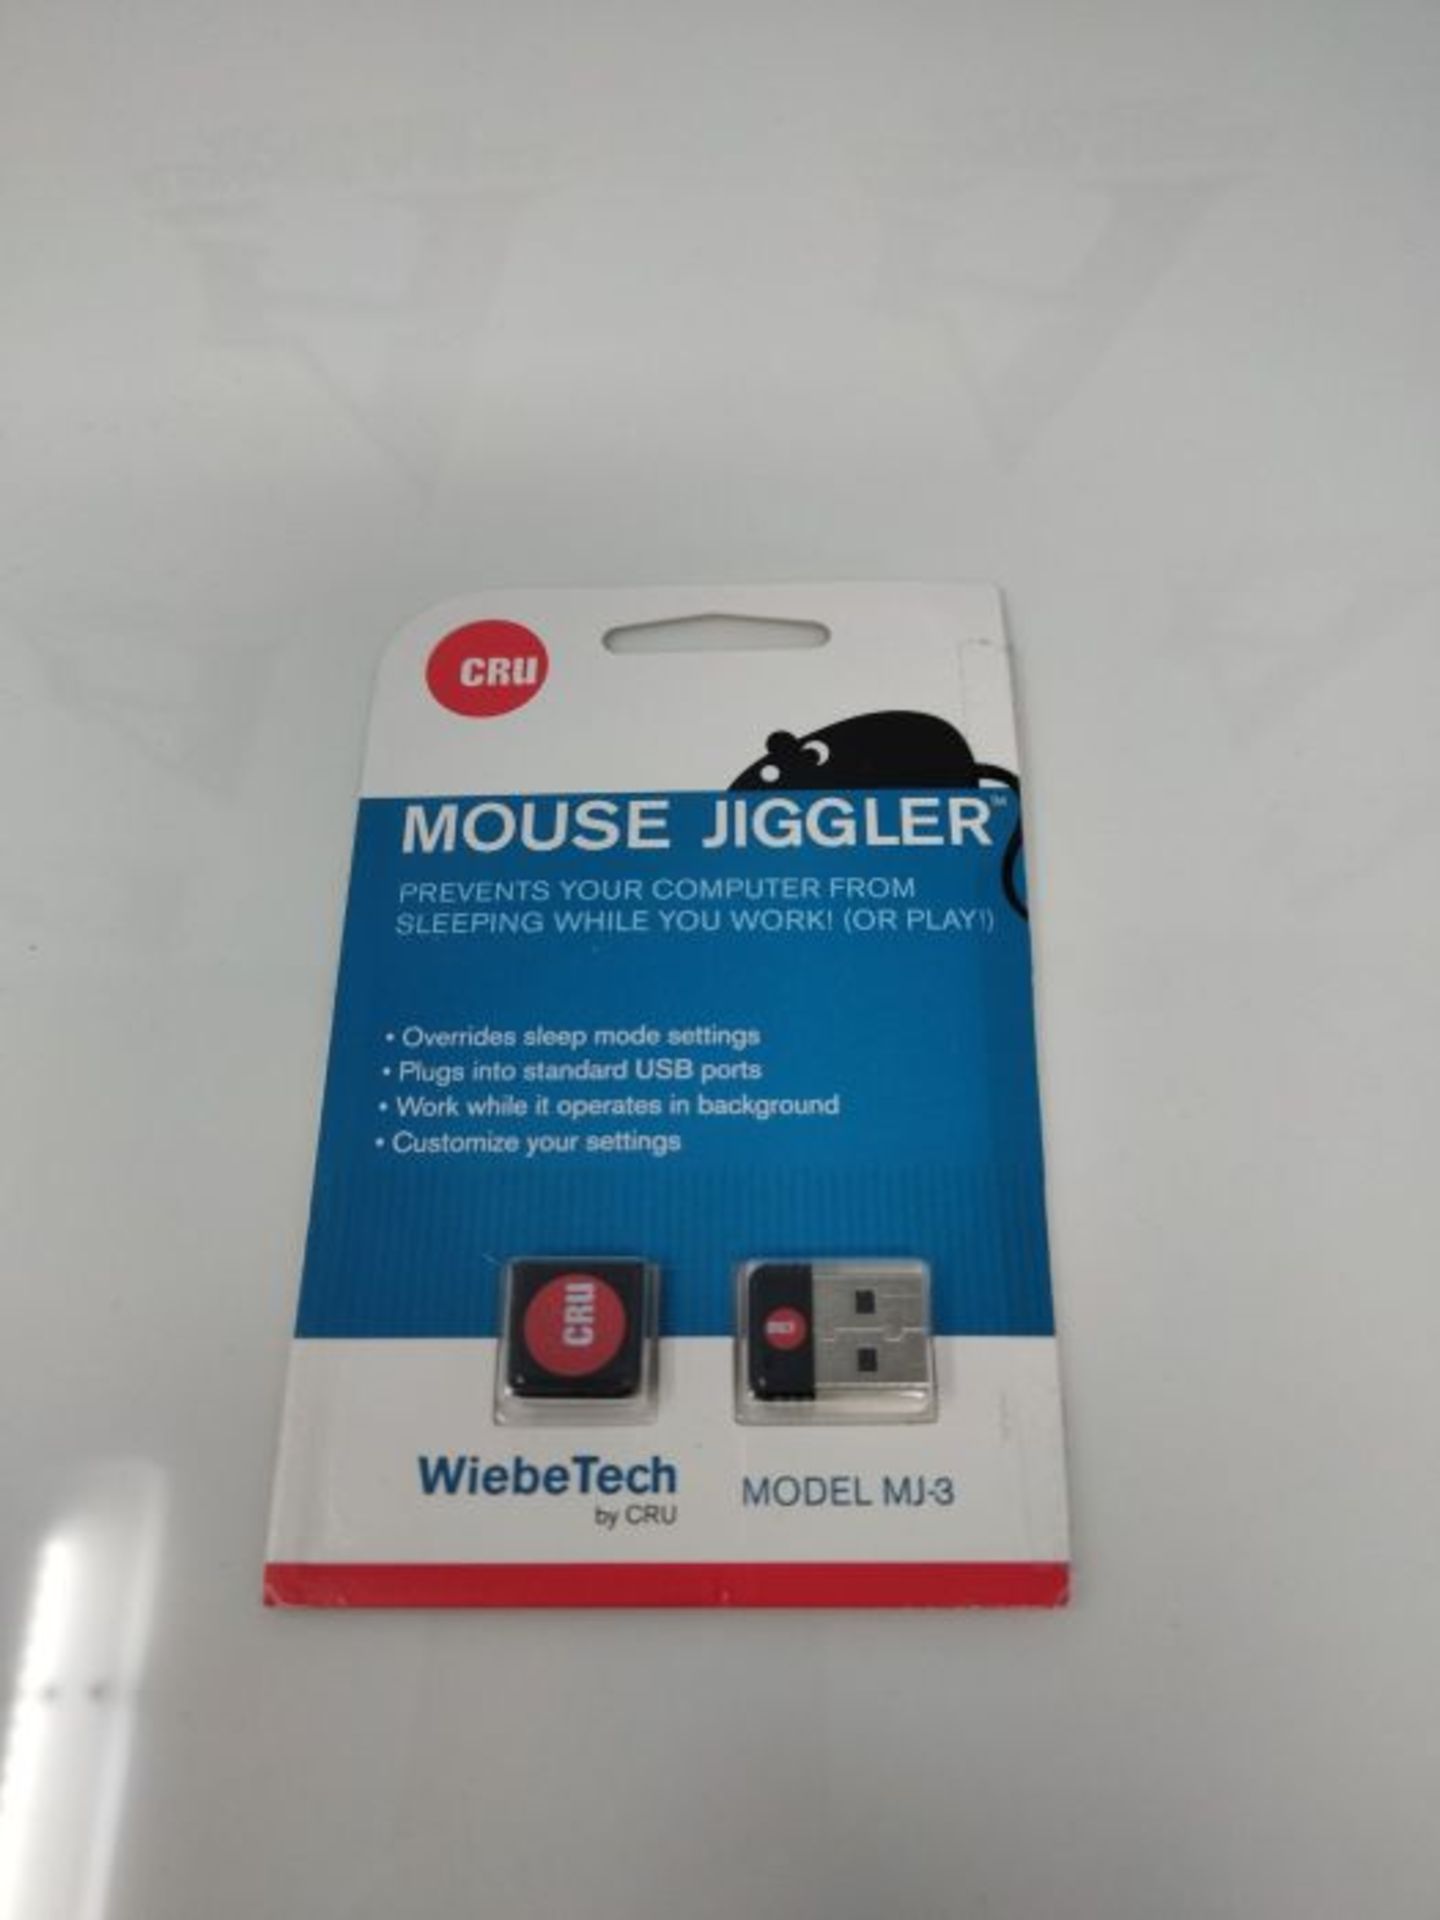 WiebeTech MJ-3 programmierbarer Maus-Jiggler - Image 2 of 2